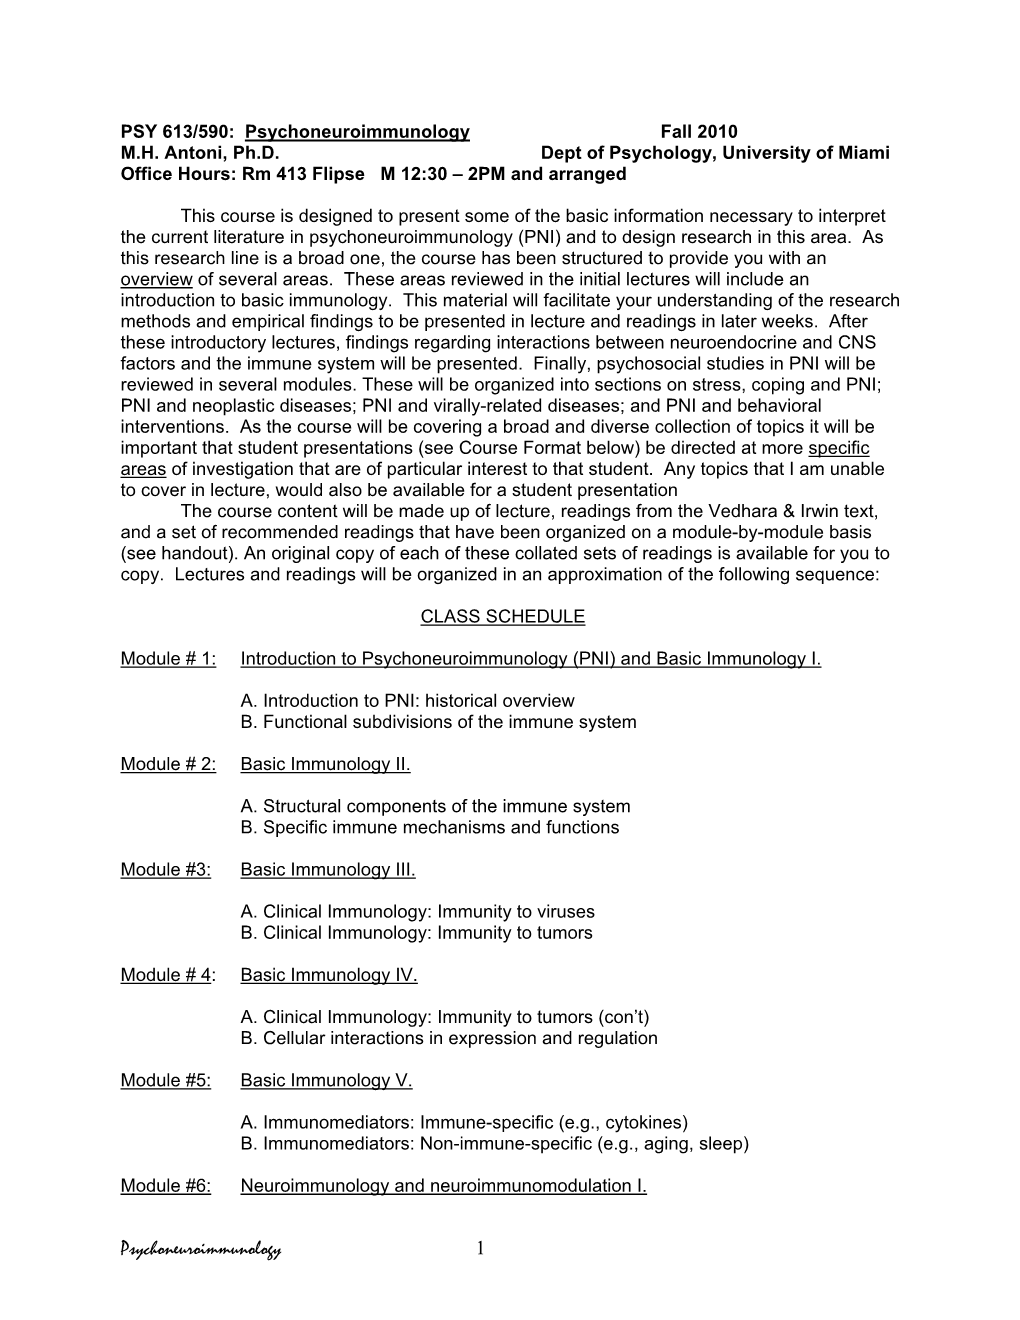 PSY 613/590: Psychoneuroimmunology Fall 2010 M.H